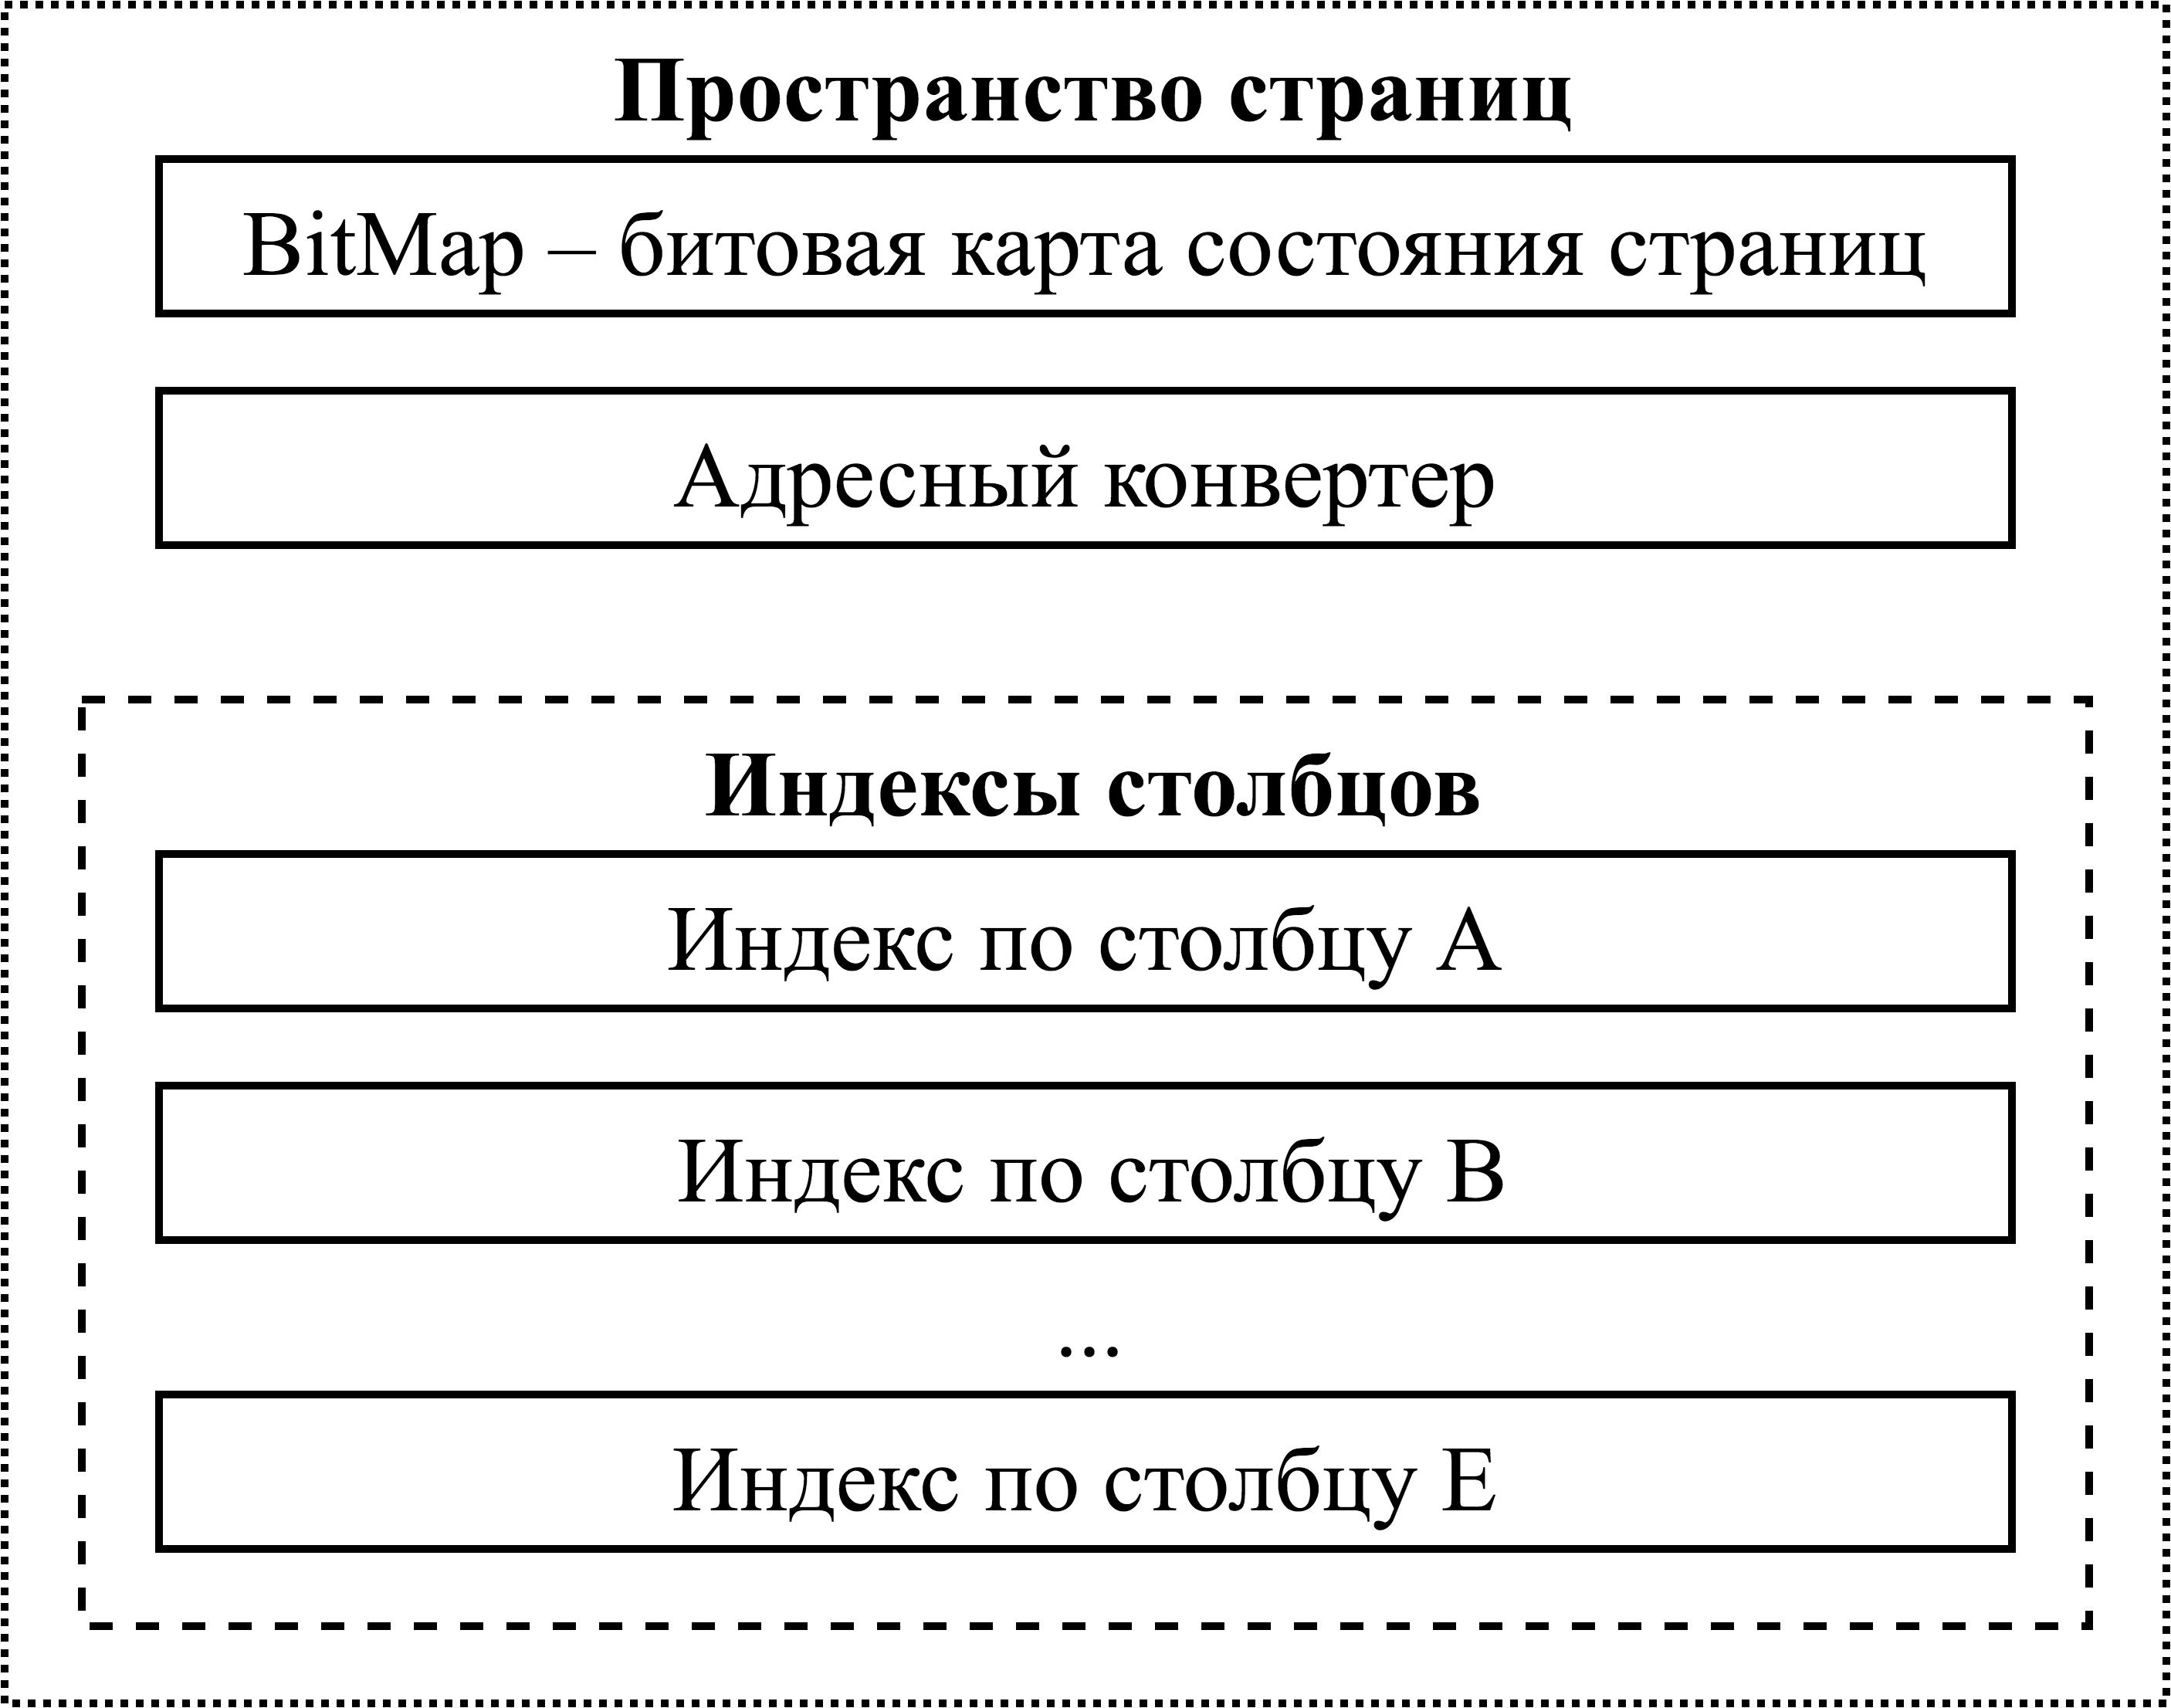 Структура первого файла индексов